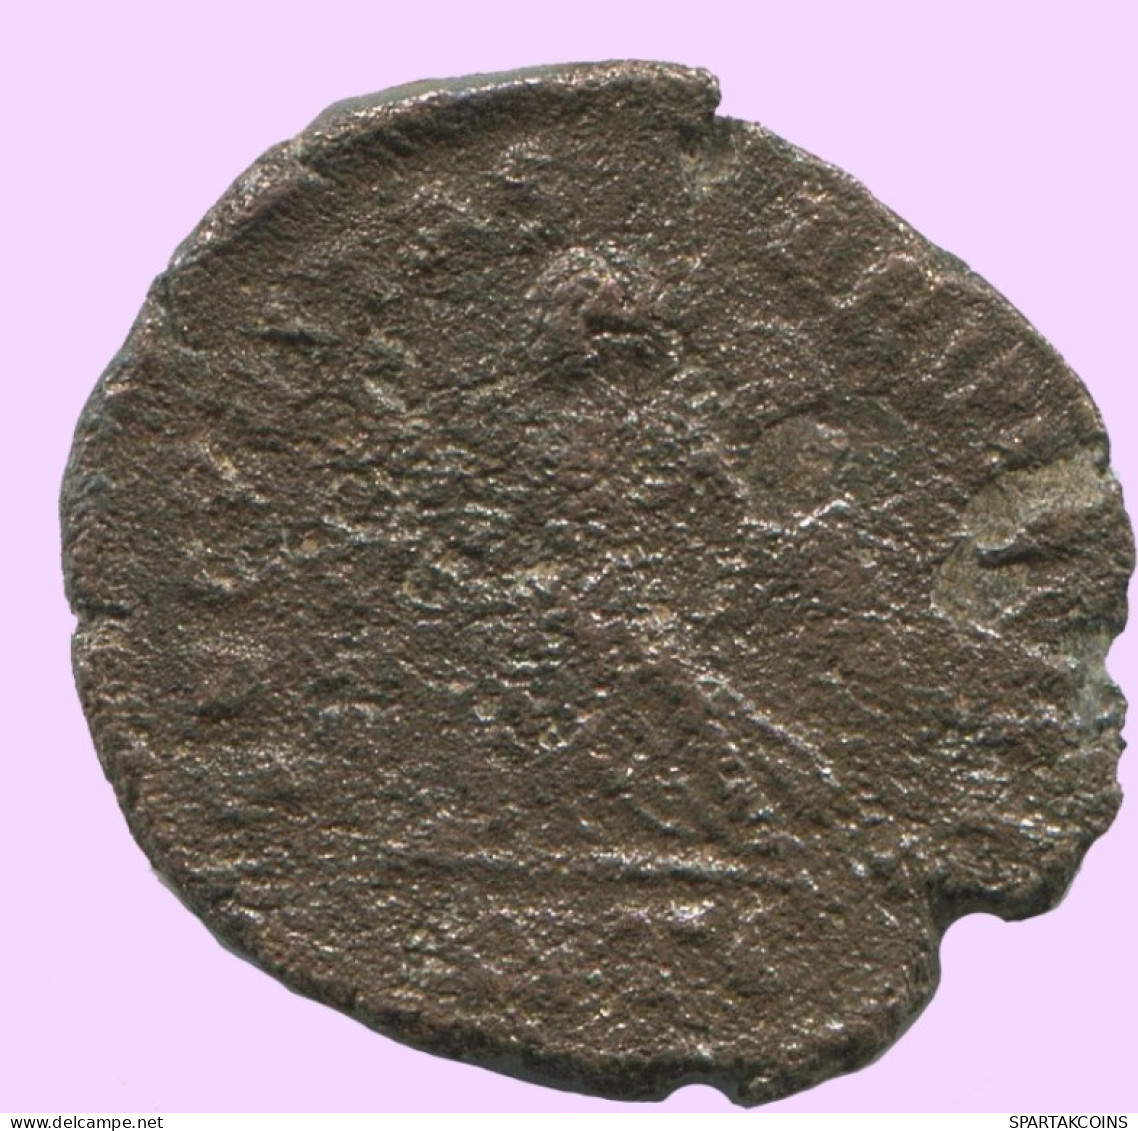 Authentische Antike Spätrömische Münze RÖMISCHE Münze 2.3g/16mm #ANT2287.14.D.A - The End Of Empire (363 AD To 476 AD)